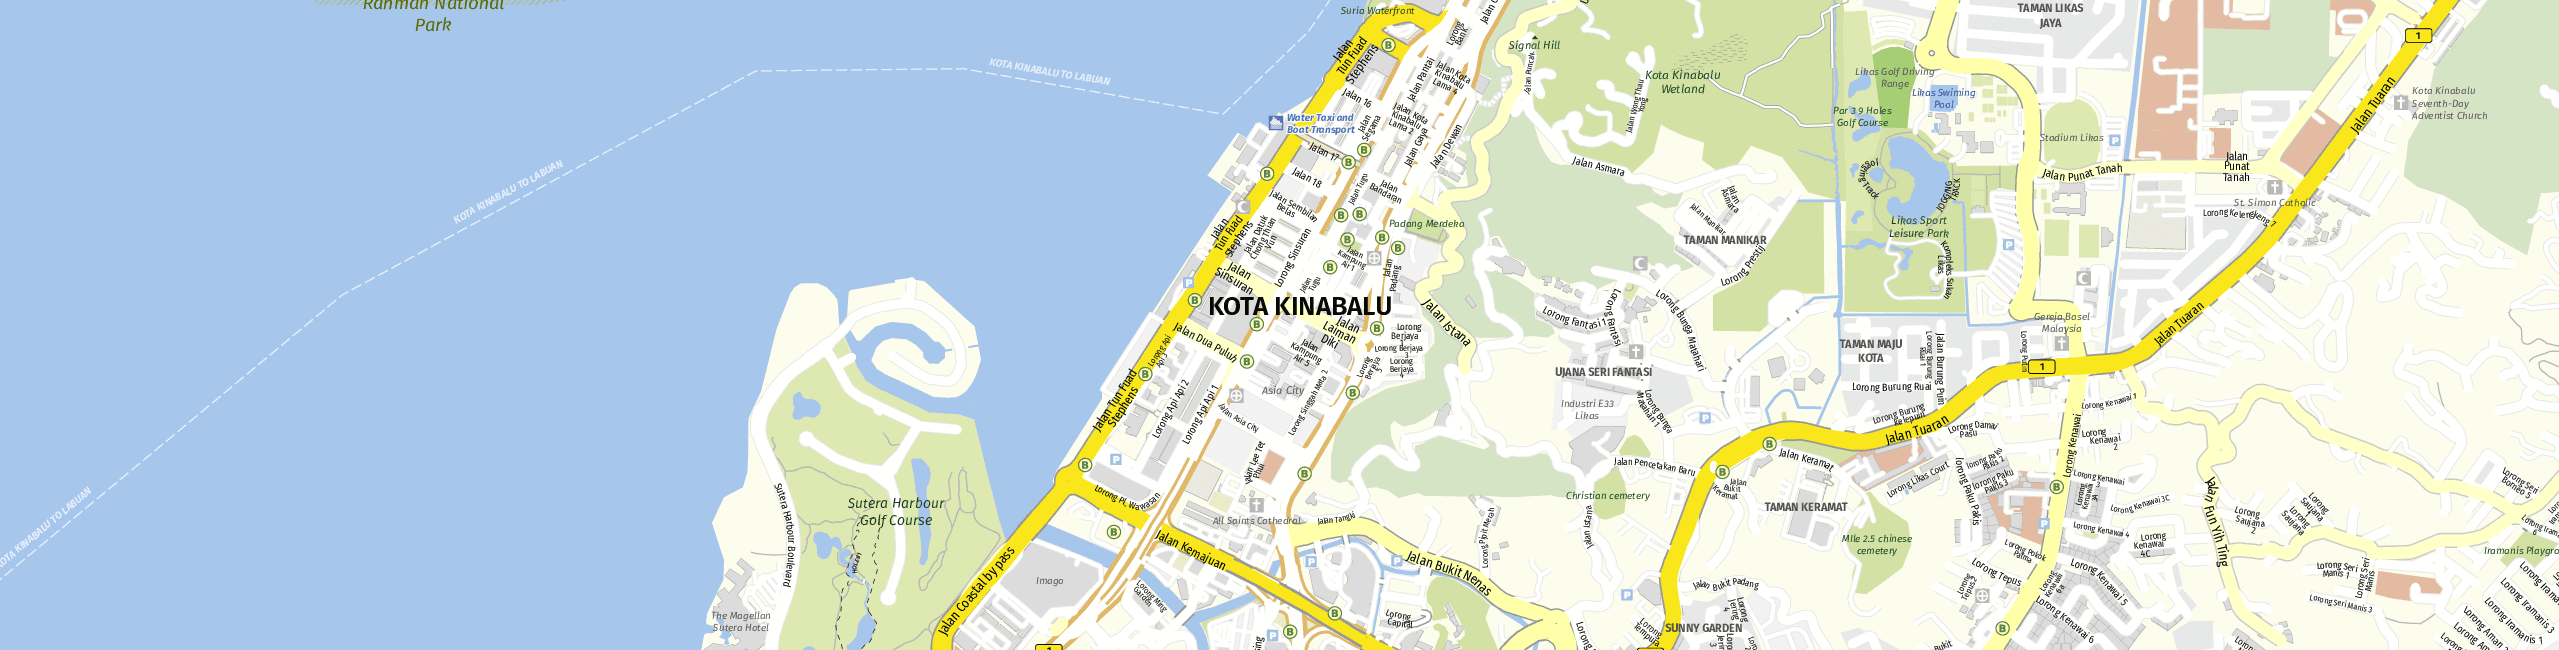 Stadtplan Kota Kinabalu zum Downloaden.